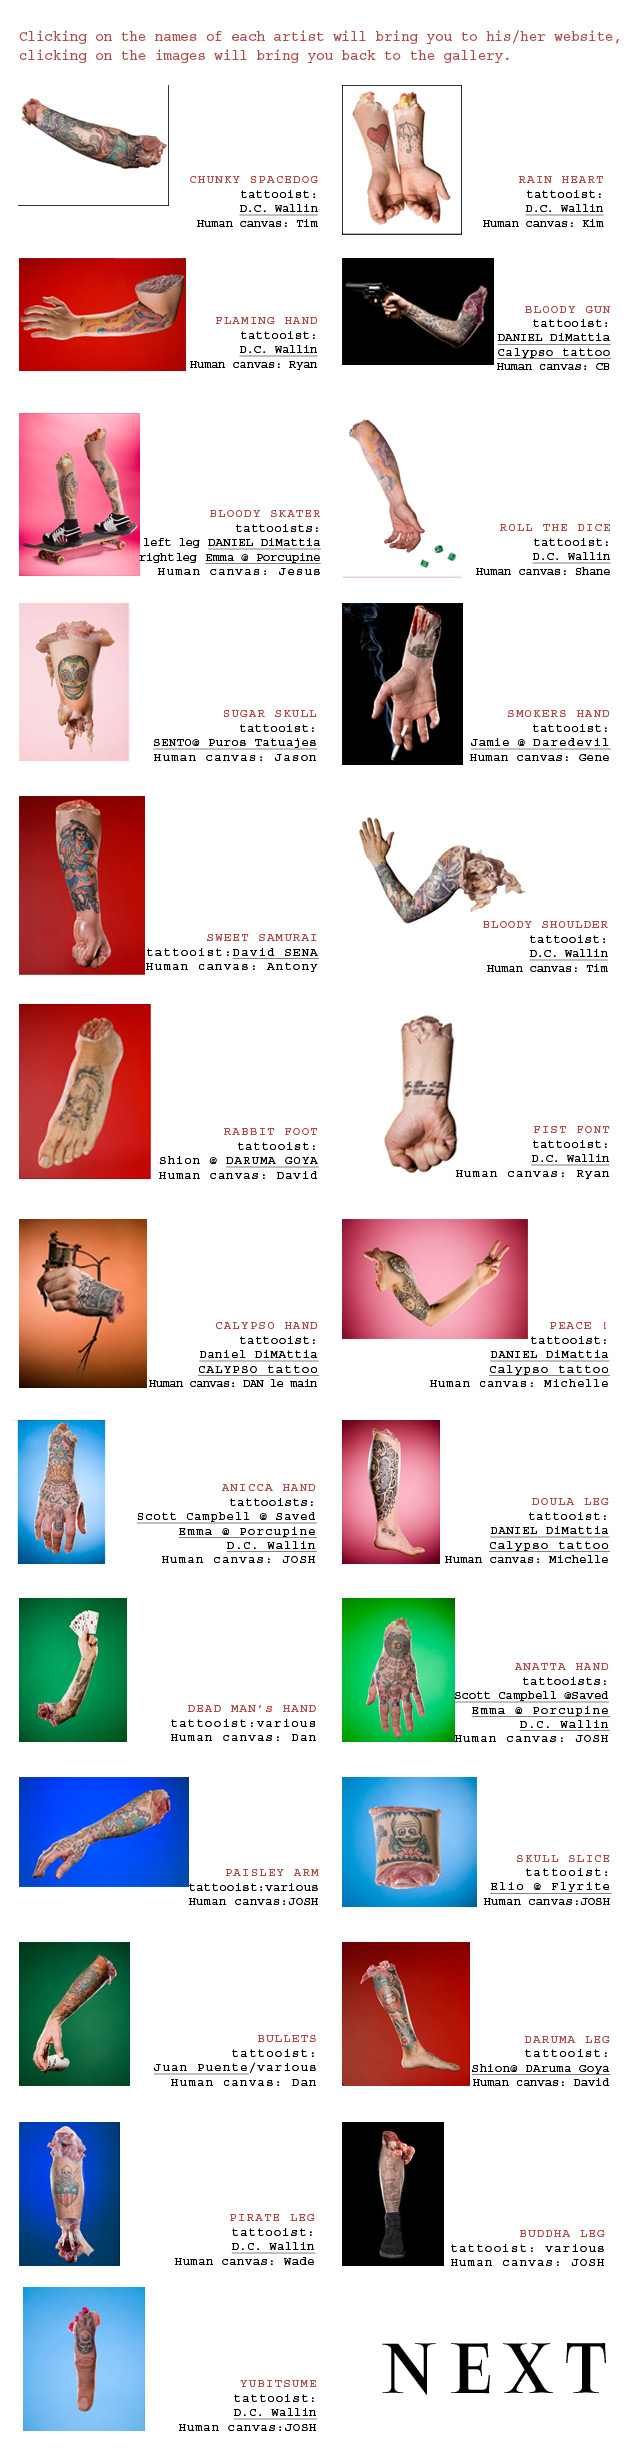 cheap tattoo removal, tattooectomy At discount prices, Till Krautkramer, Till krautkraemer, Till Krautkrämer, www.tillfoto.com